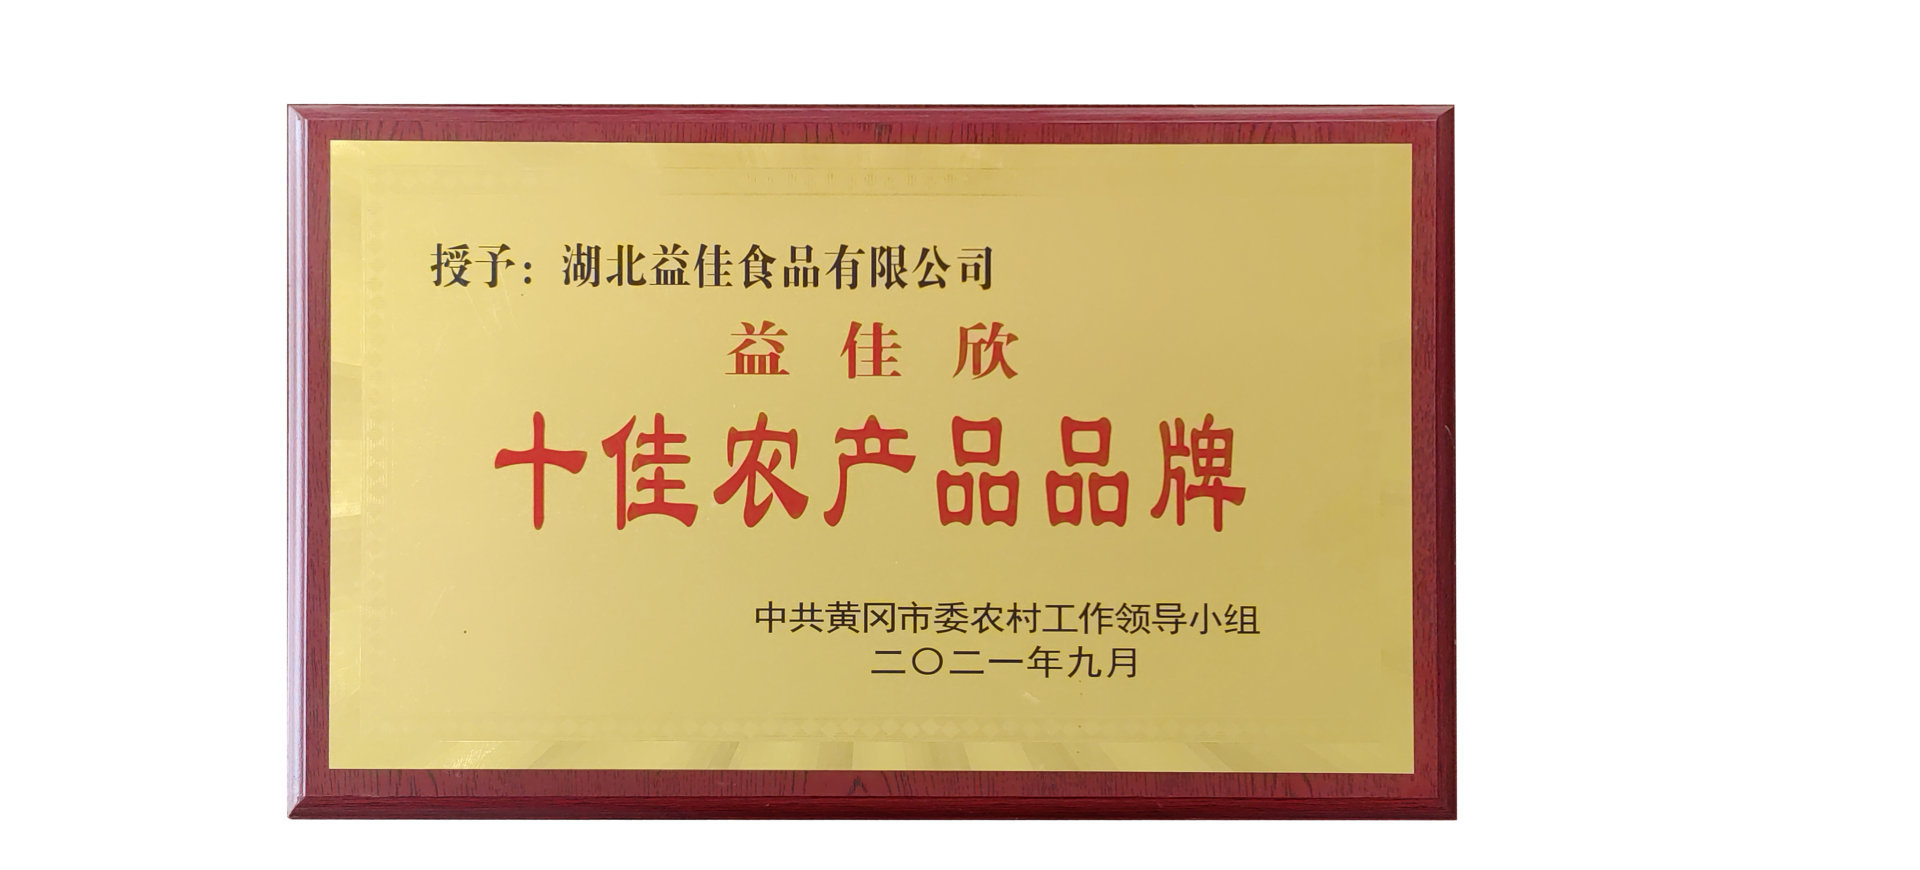 中共黄冈市委农村工作领导小组  授予：亚星国际正网(北京)有限公司的“益佳欣”品牌为十佳农产品品牌。